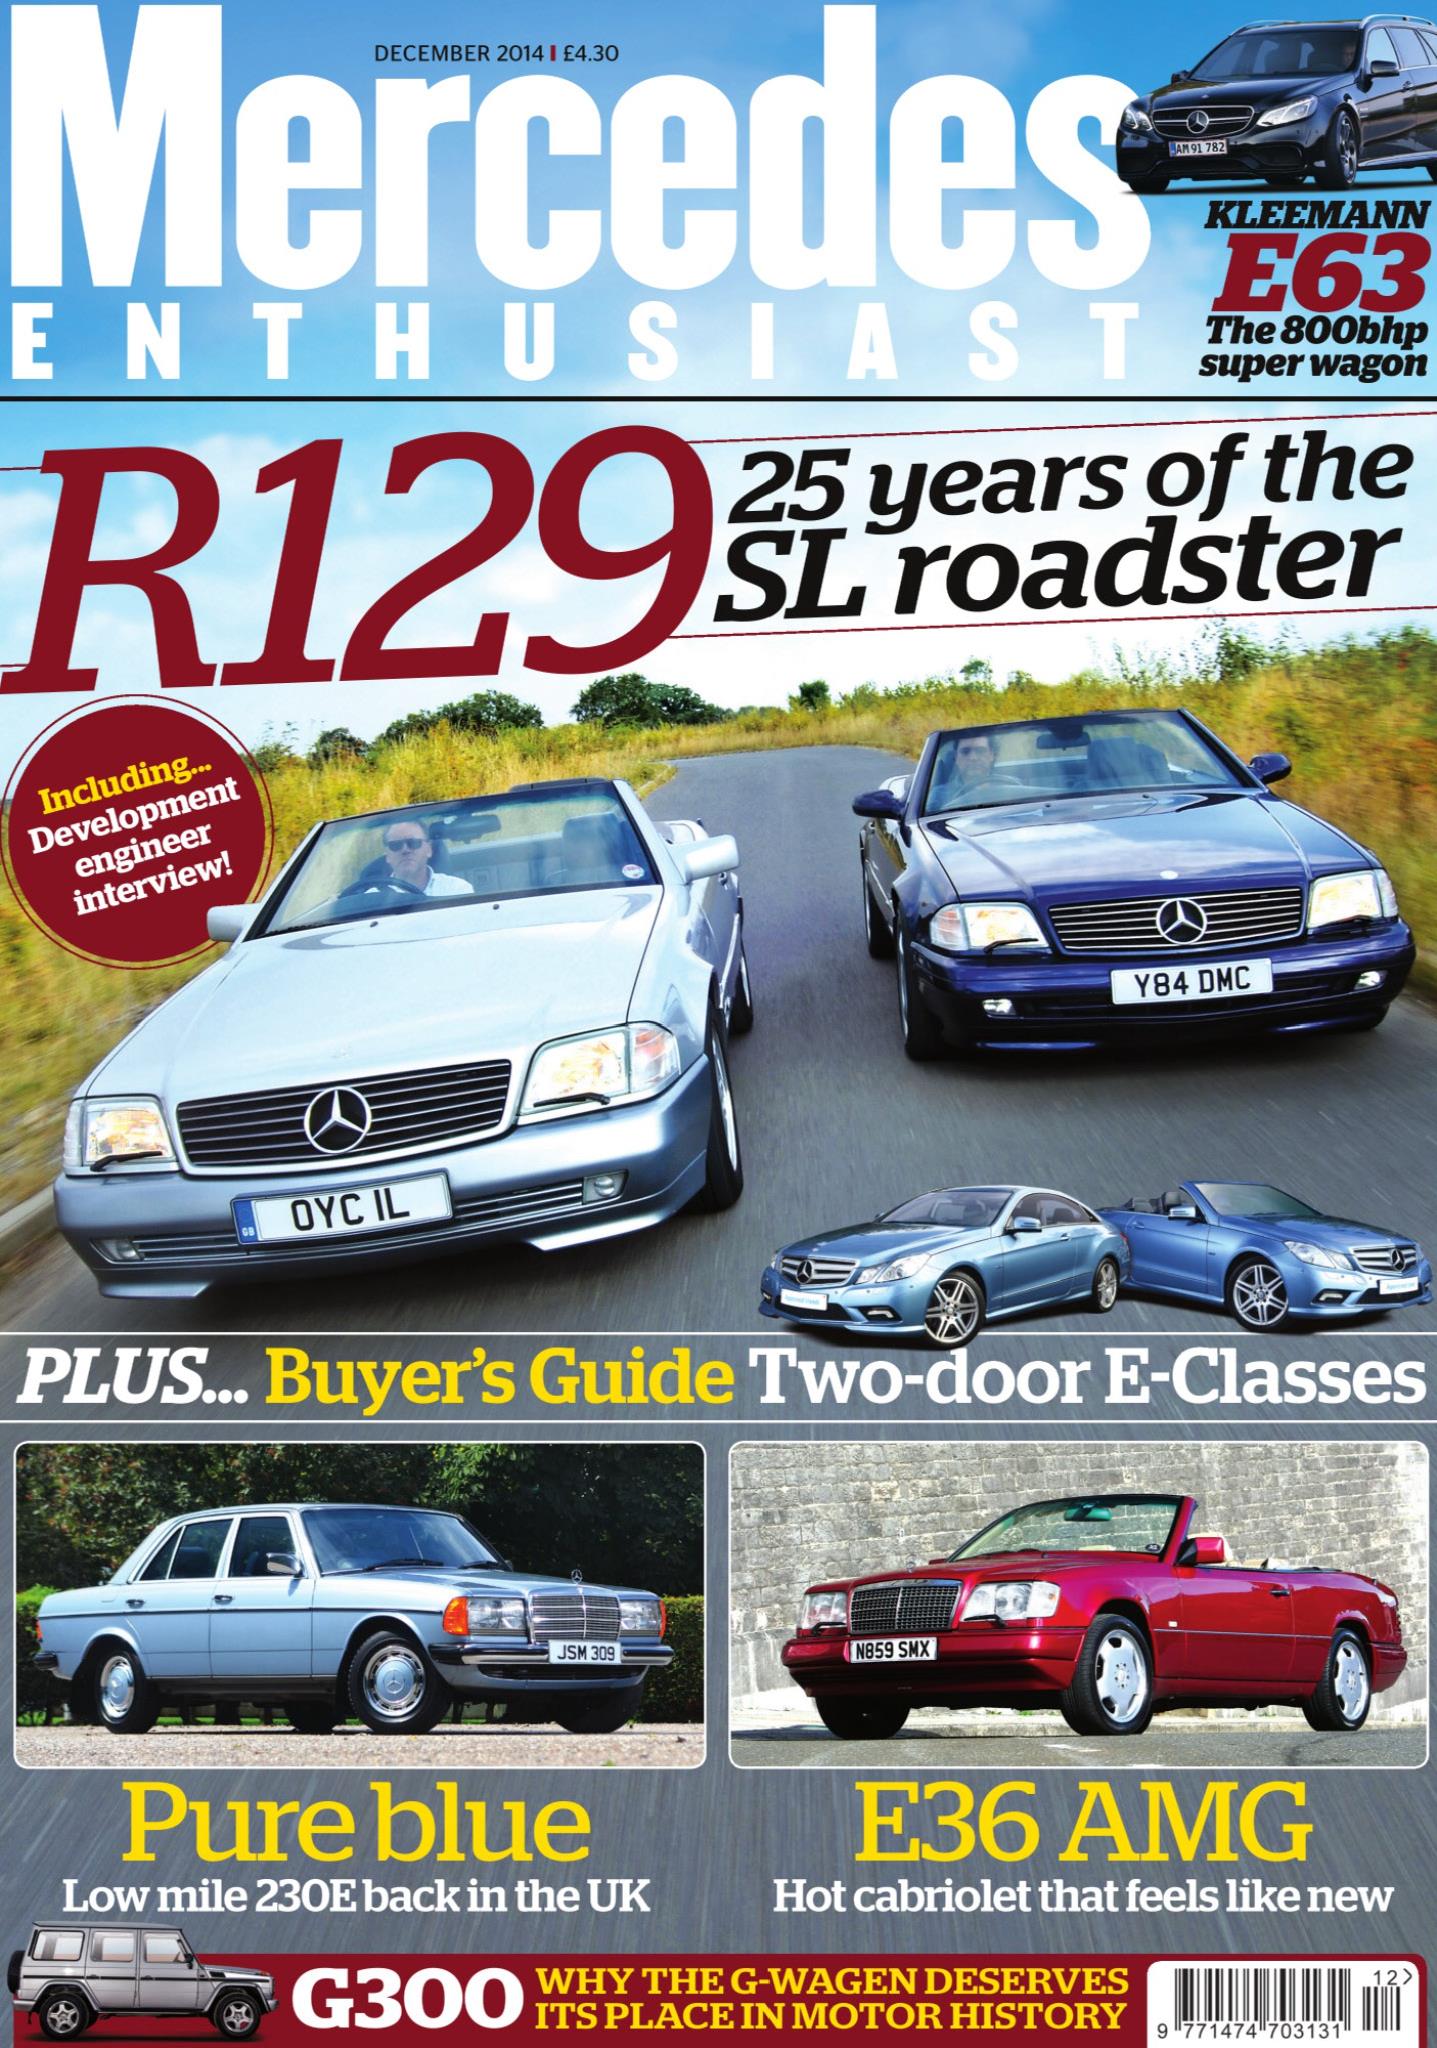 Журнал Mercedes enthusiast. december 2014